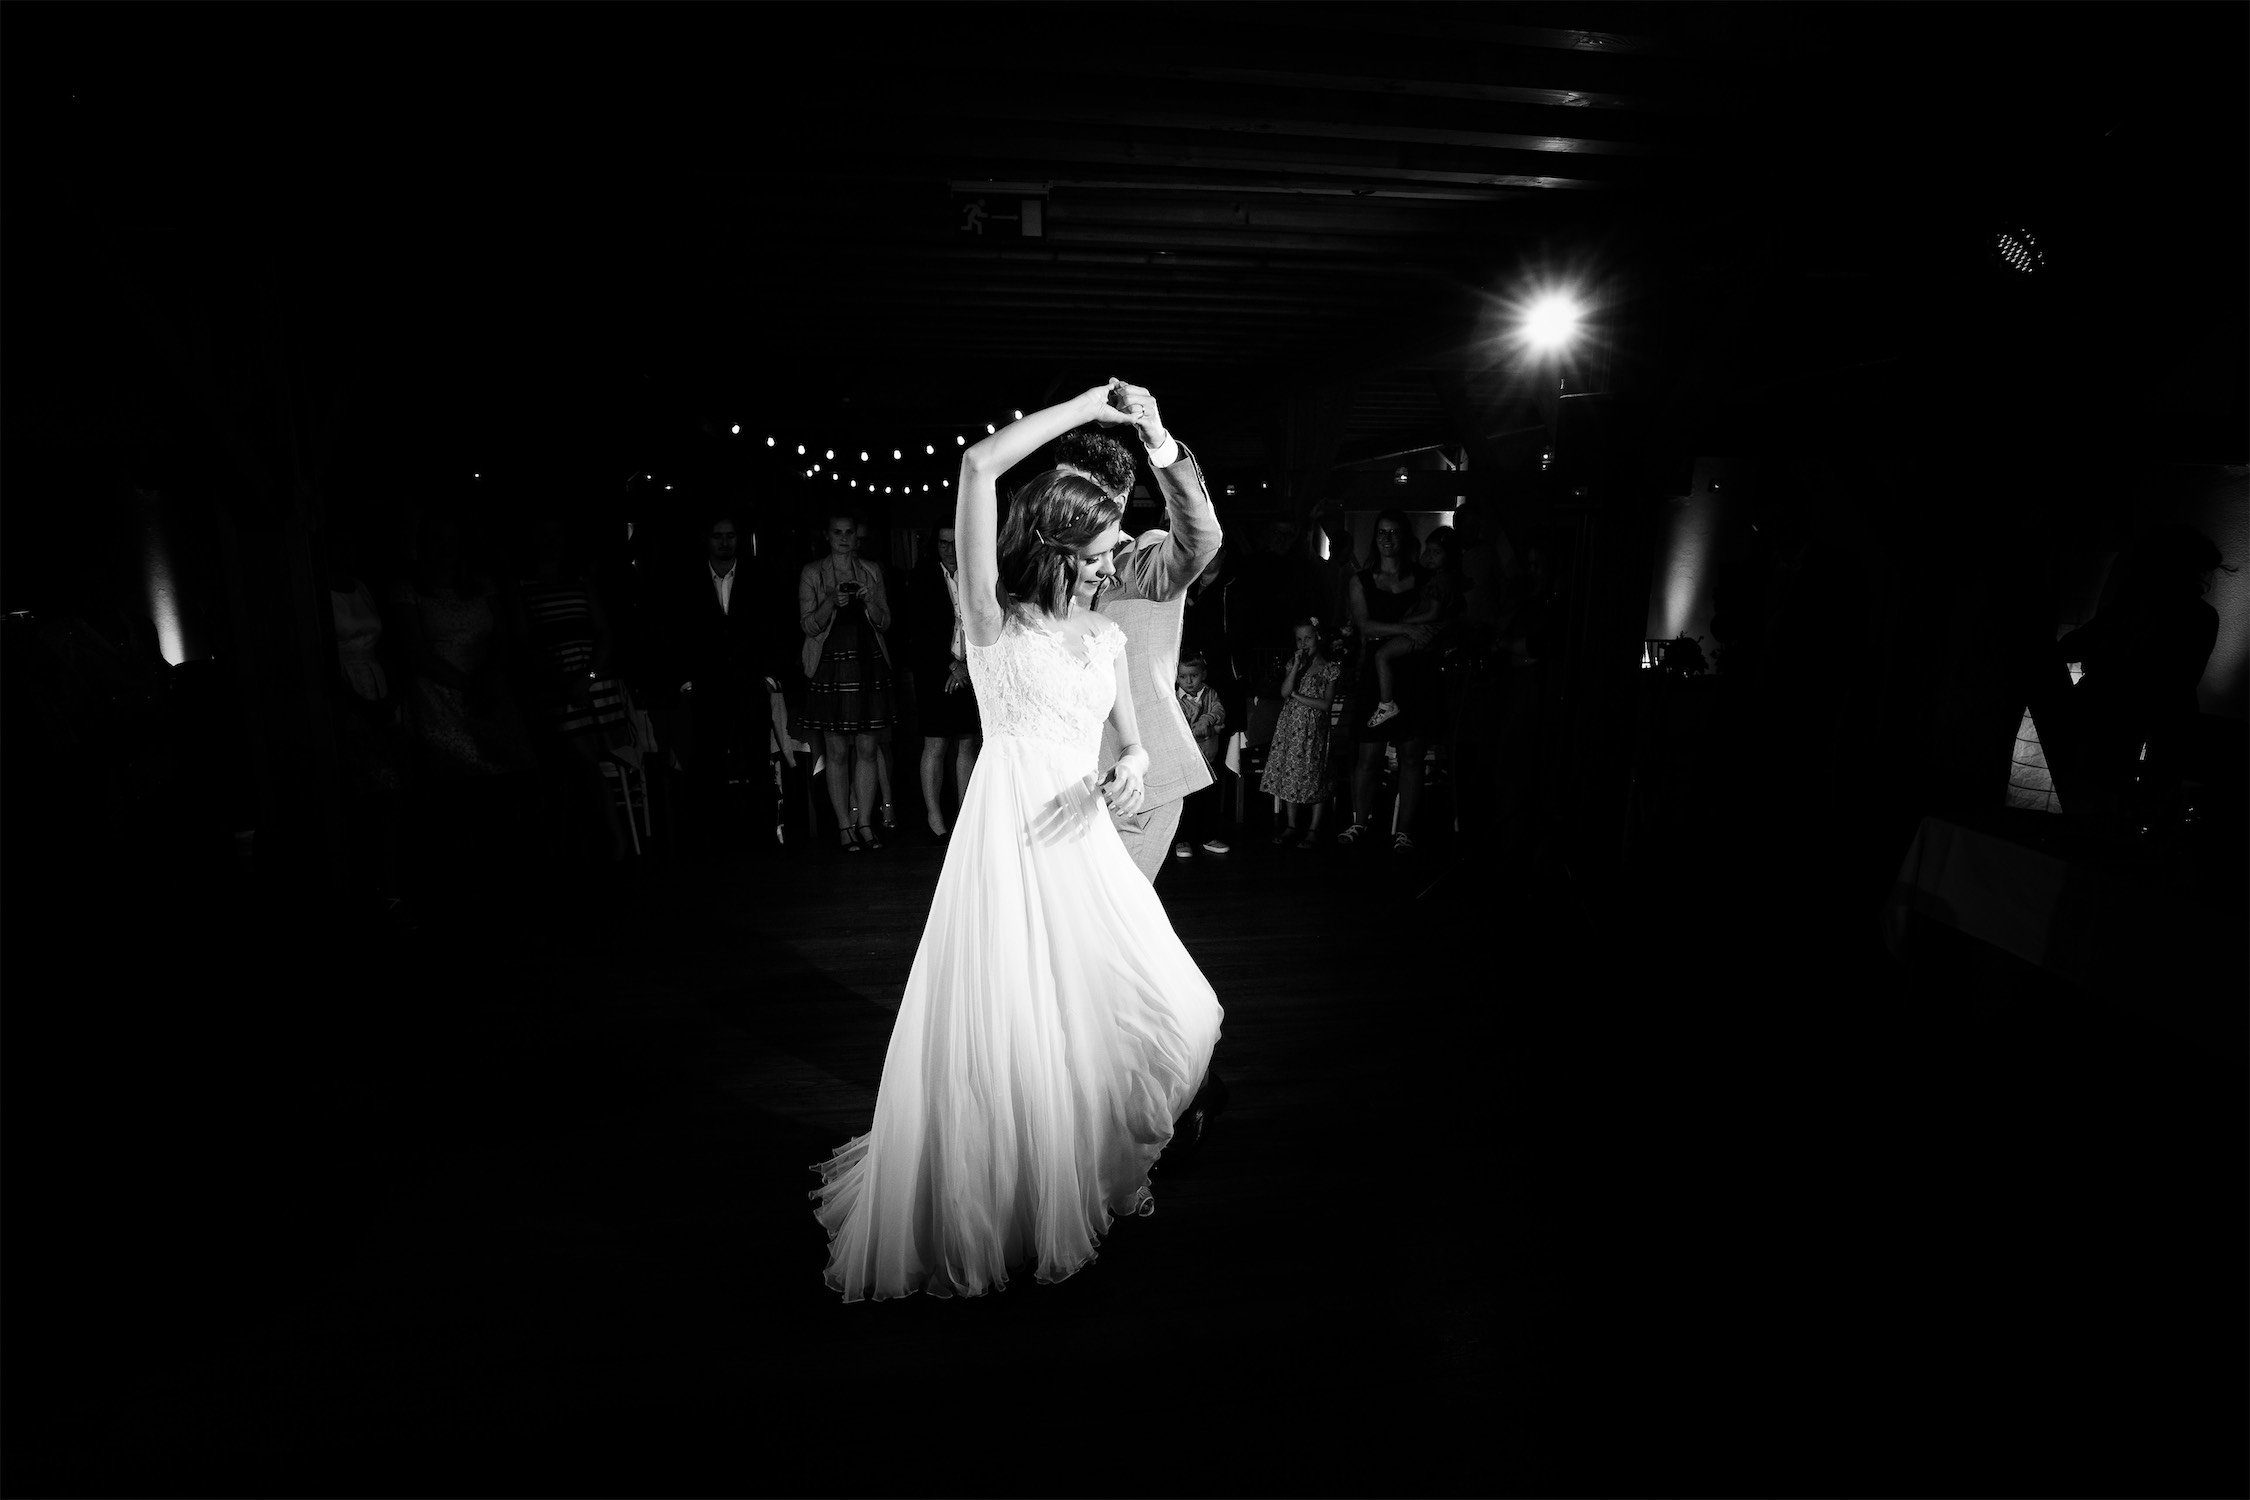 Hochzeitsfotograf Walsrode hält den Eröffnungstanz in Bildern fest